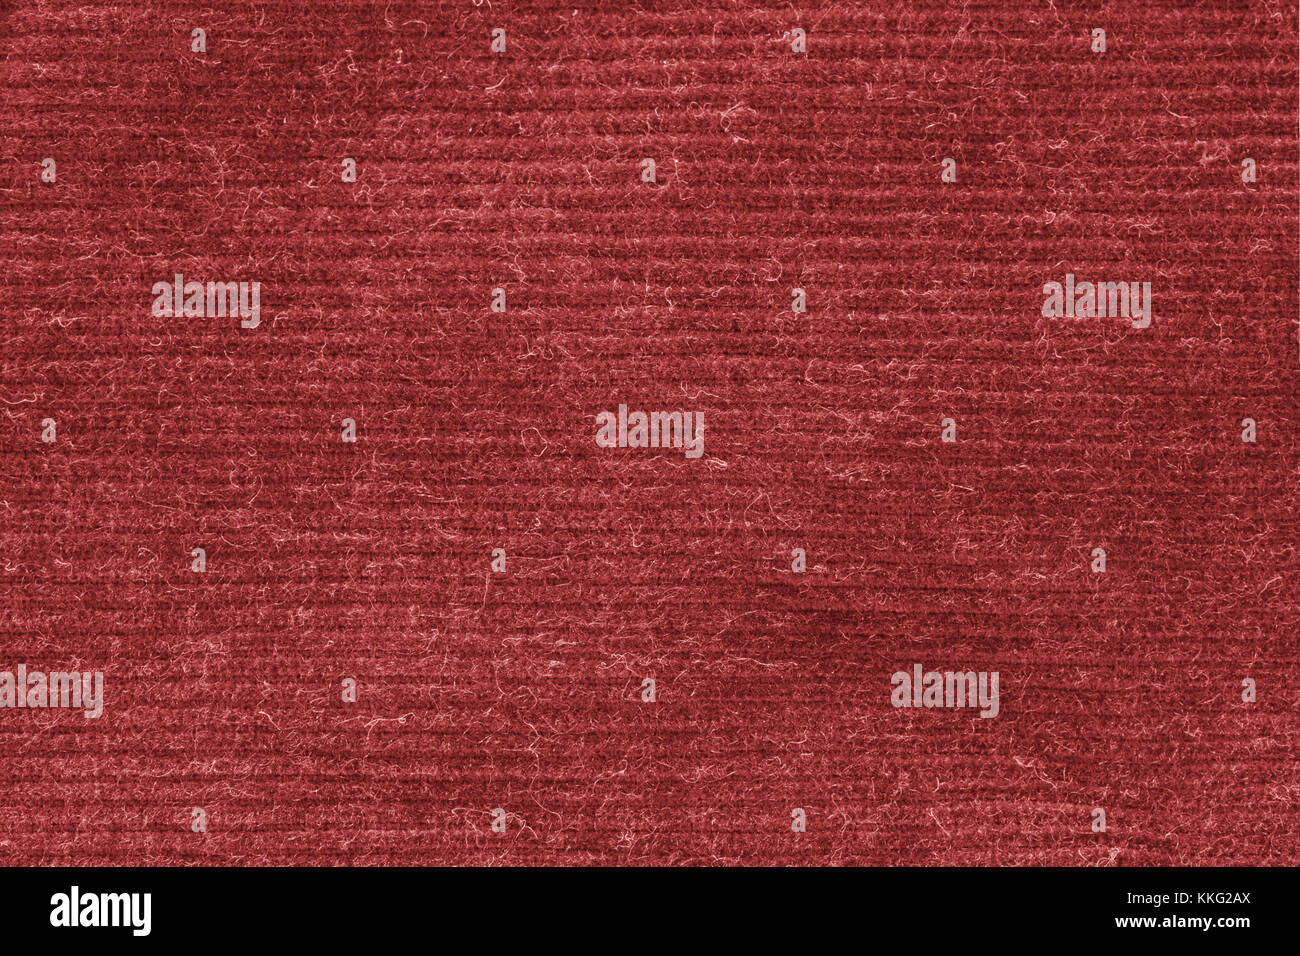 Red gewaschen Teppich Textur, Leinwand weiße Textur Hintergrund. Stockfoto